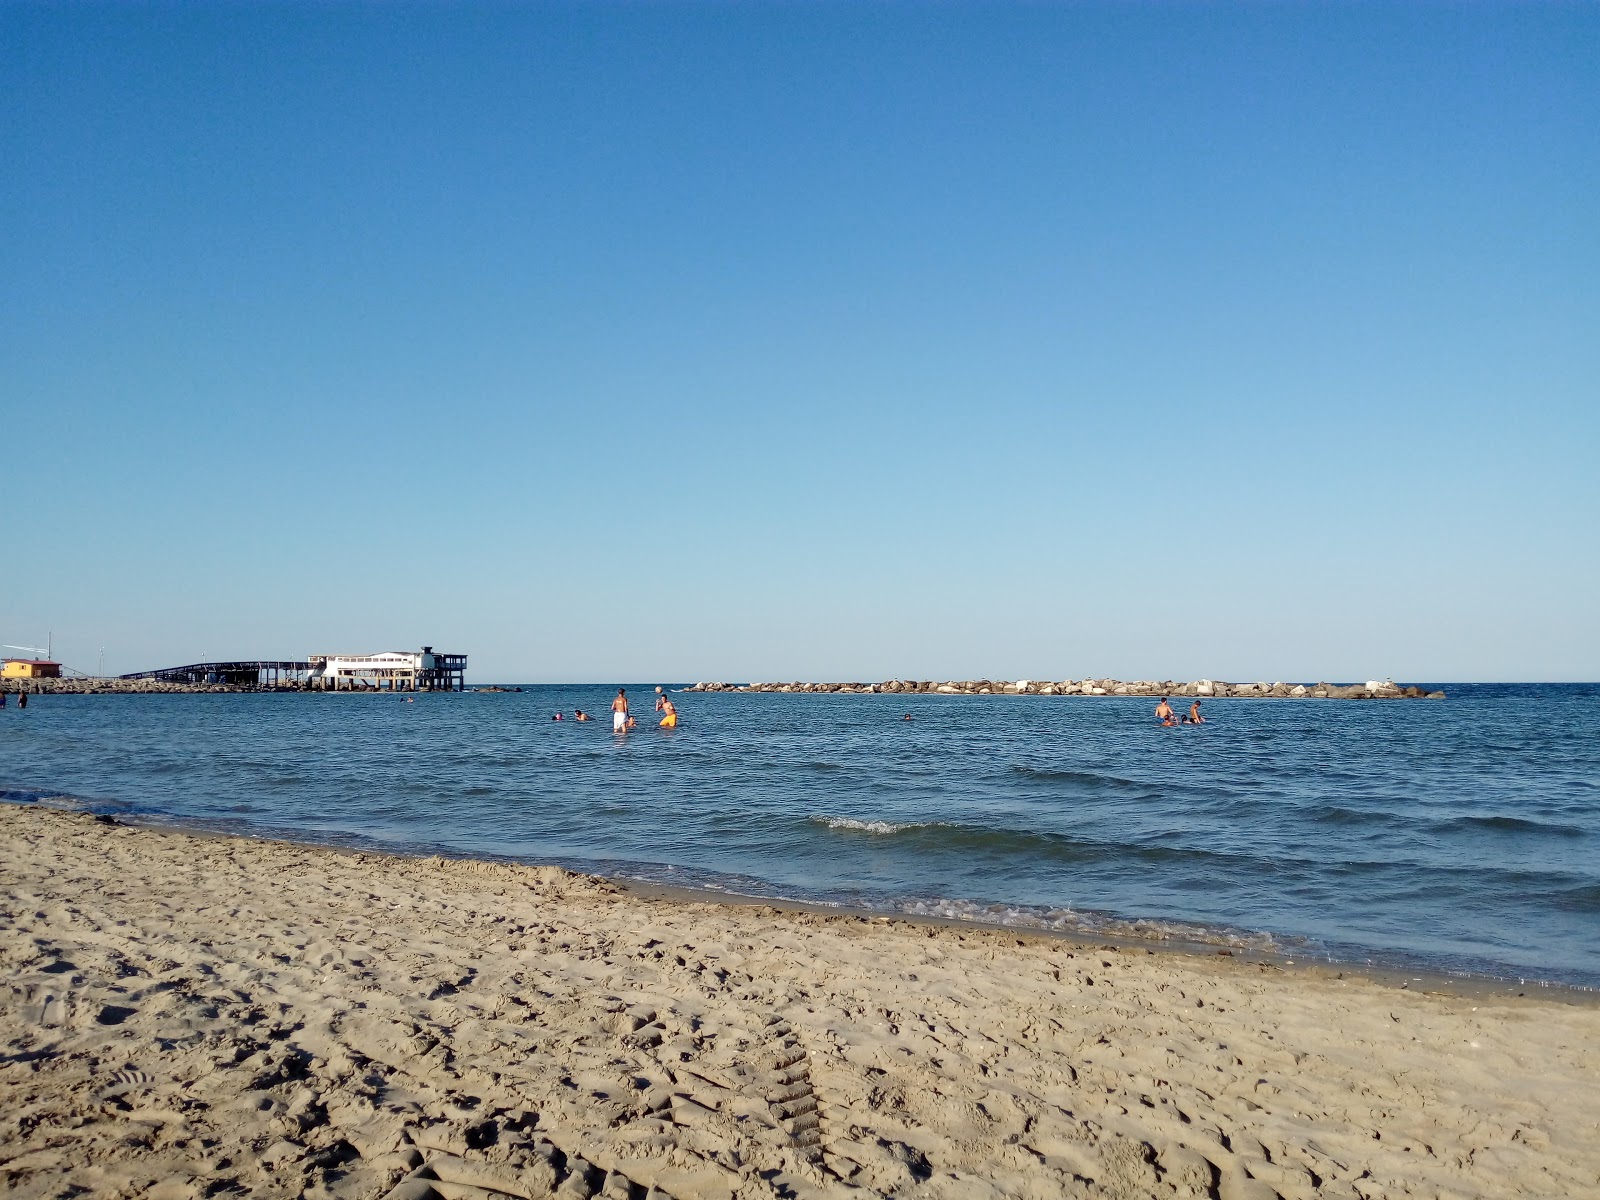 Foto de Casal Borsetti con playa amplia